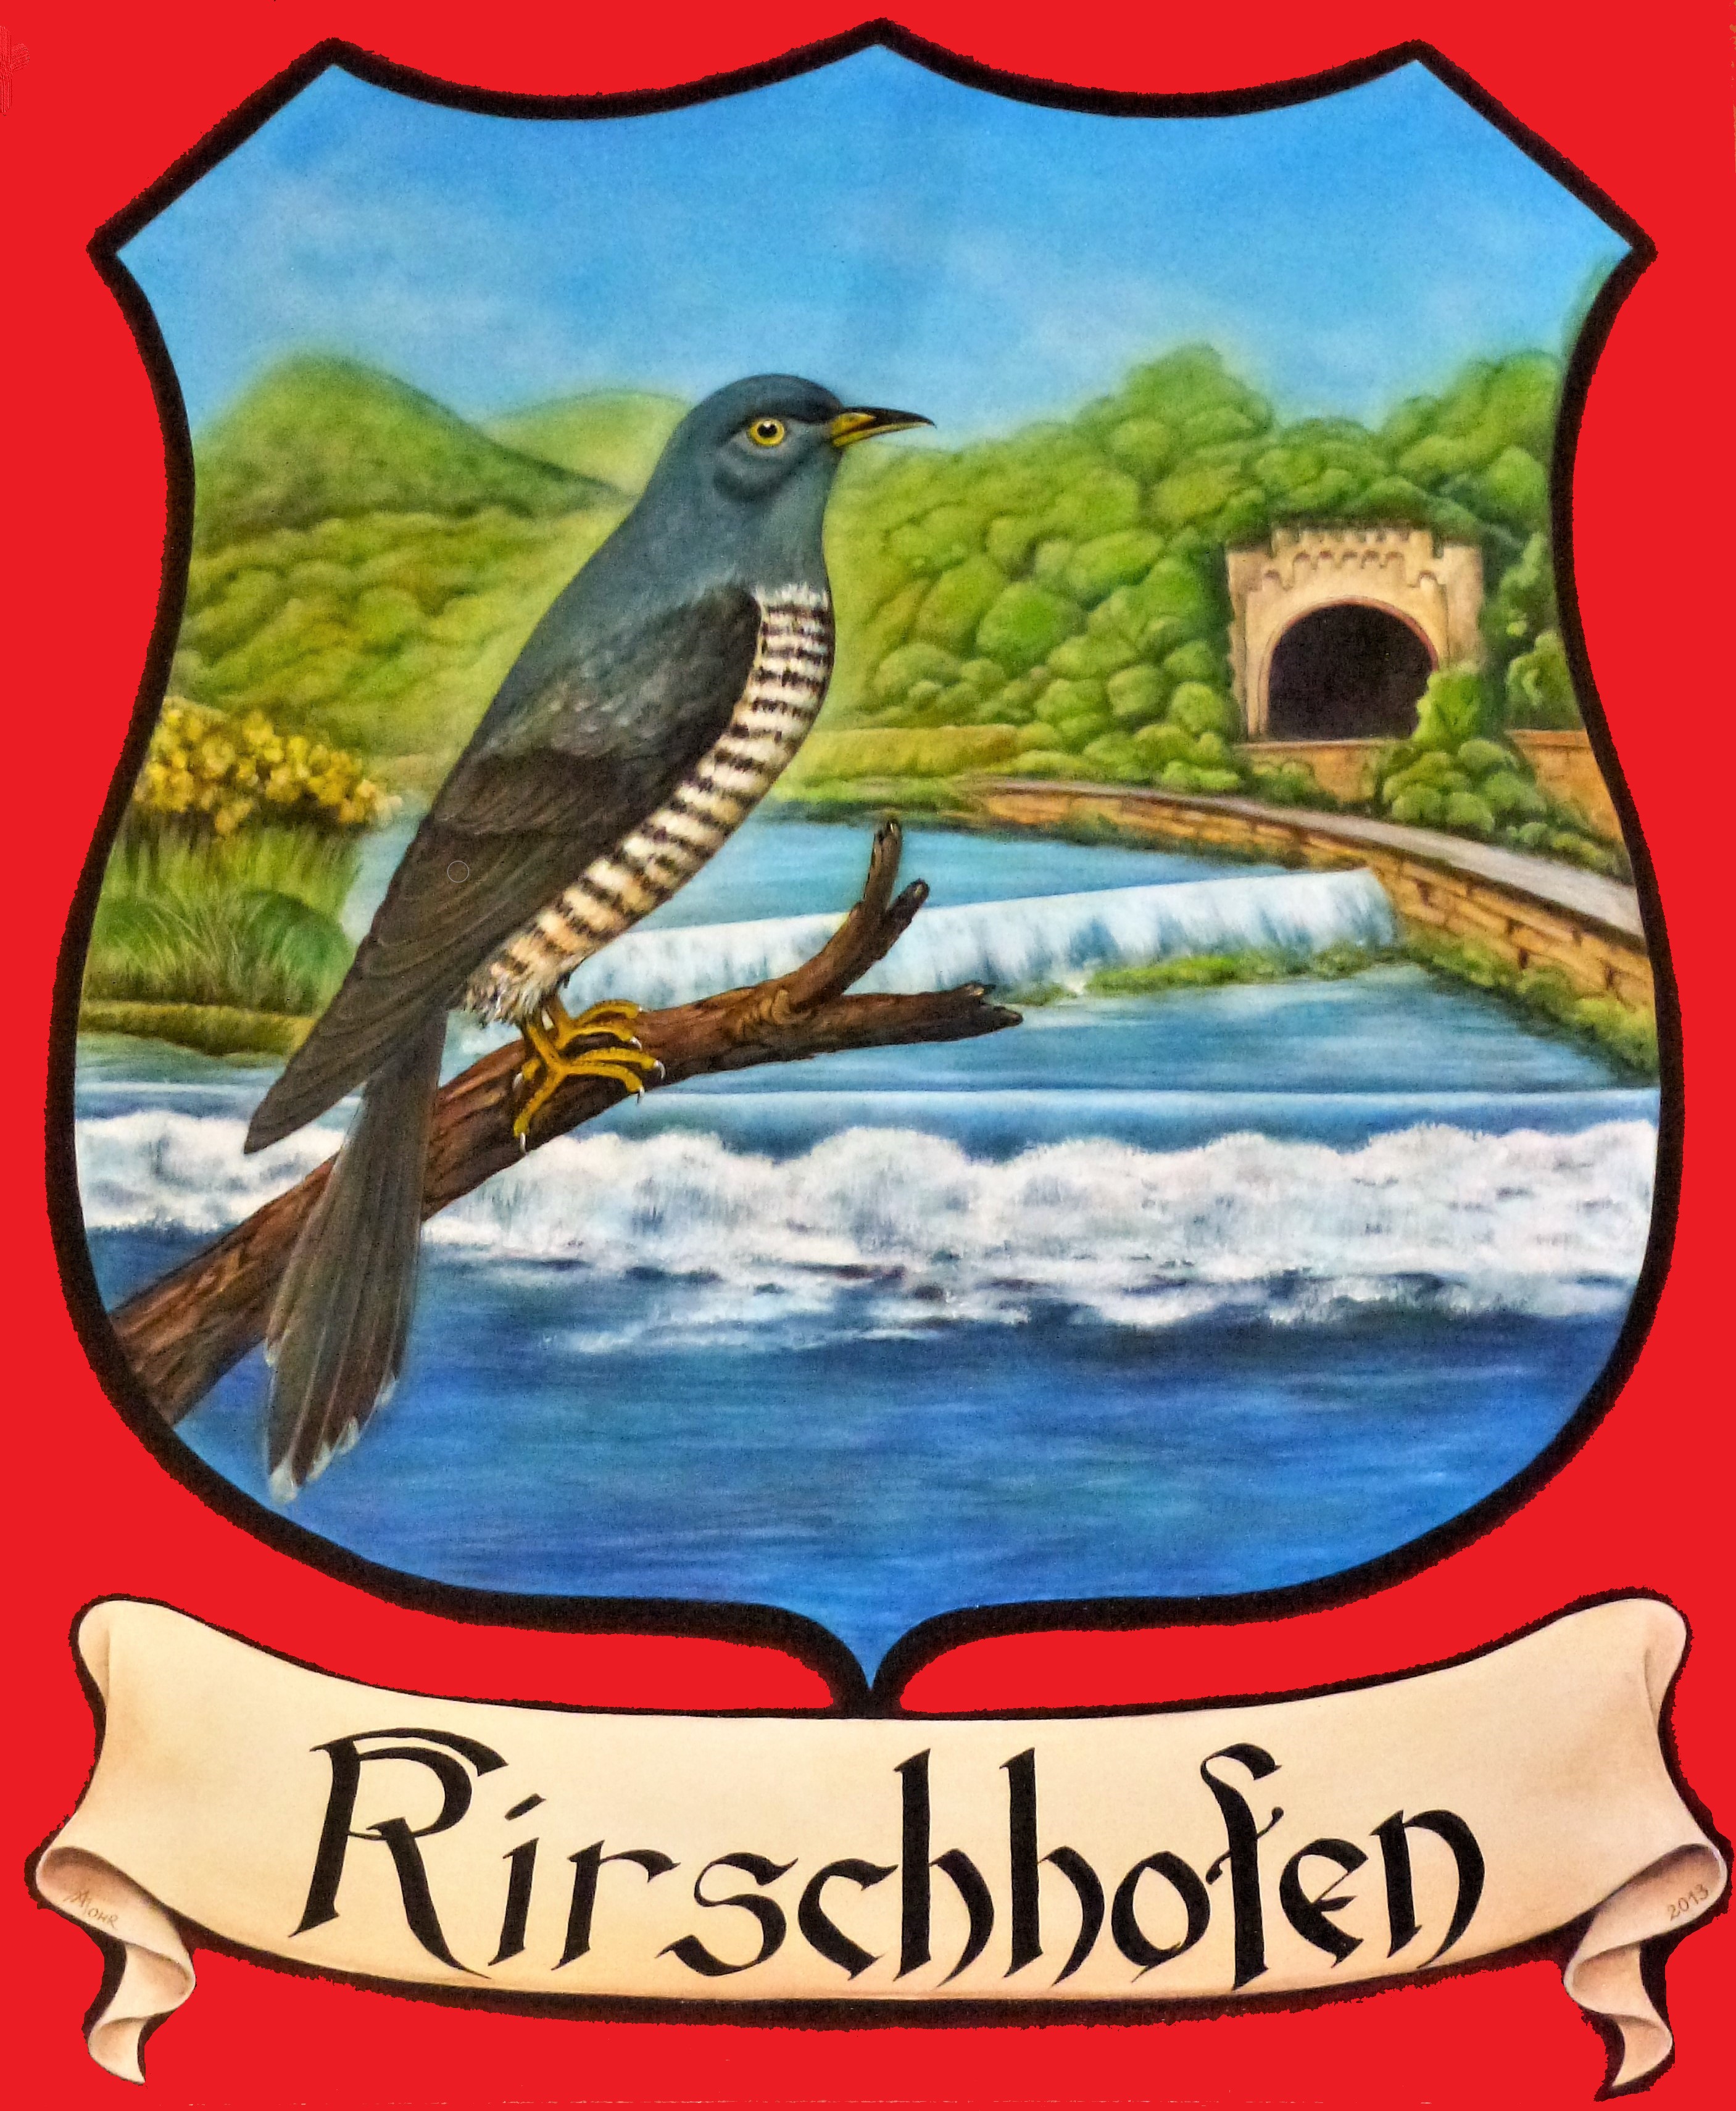 Kirschhofenwappen